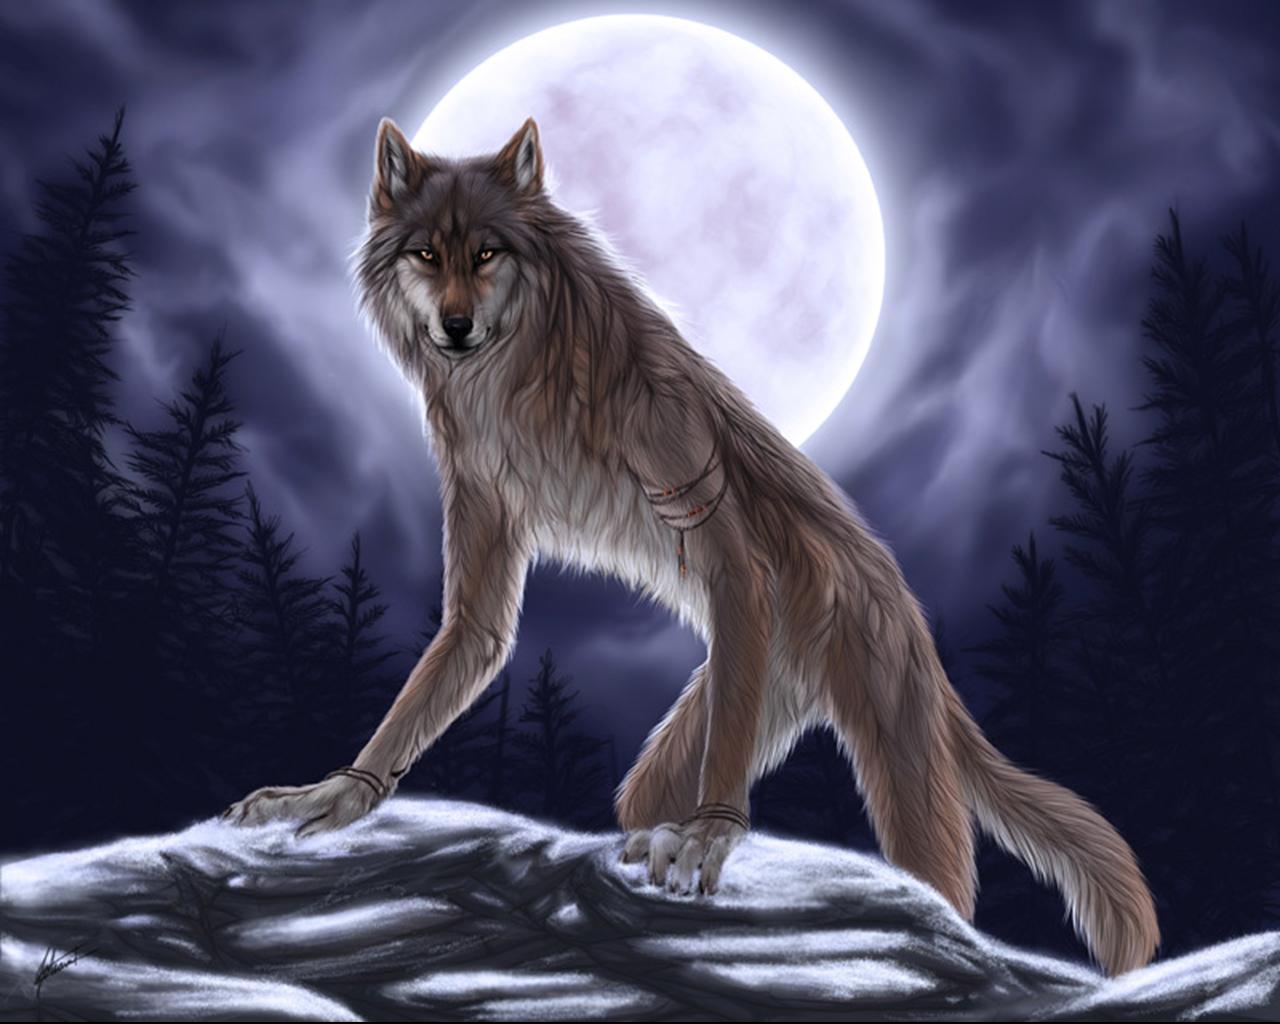 Werewolf-fantasy-31034491-1280-1024.jpg